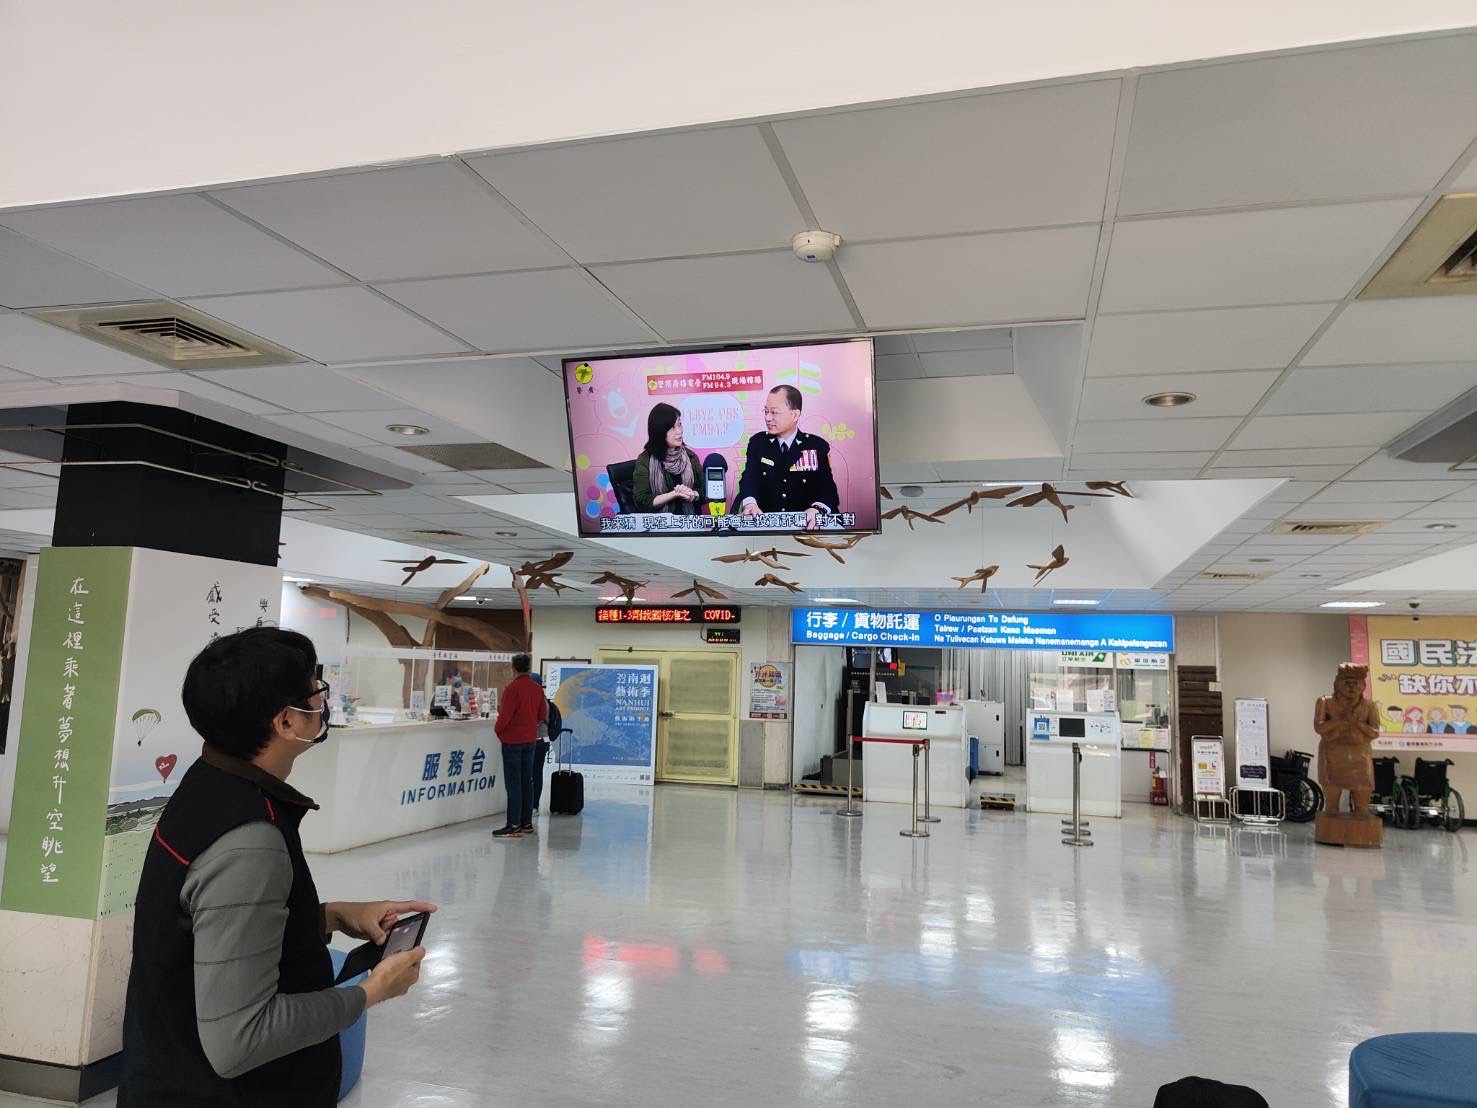 臺東航空站航廈內電視螢幕撥放情形